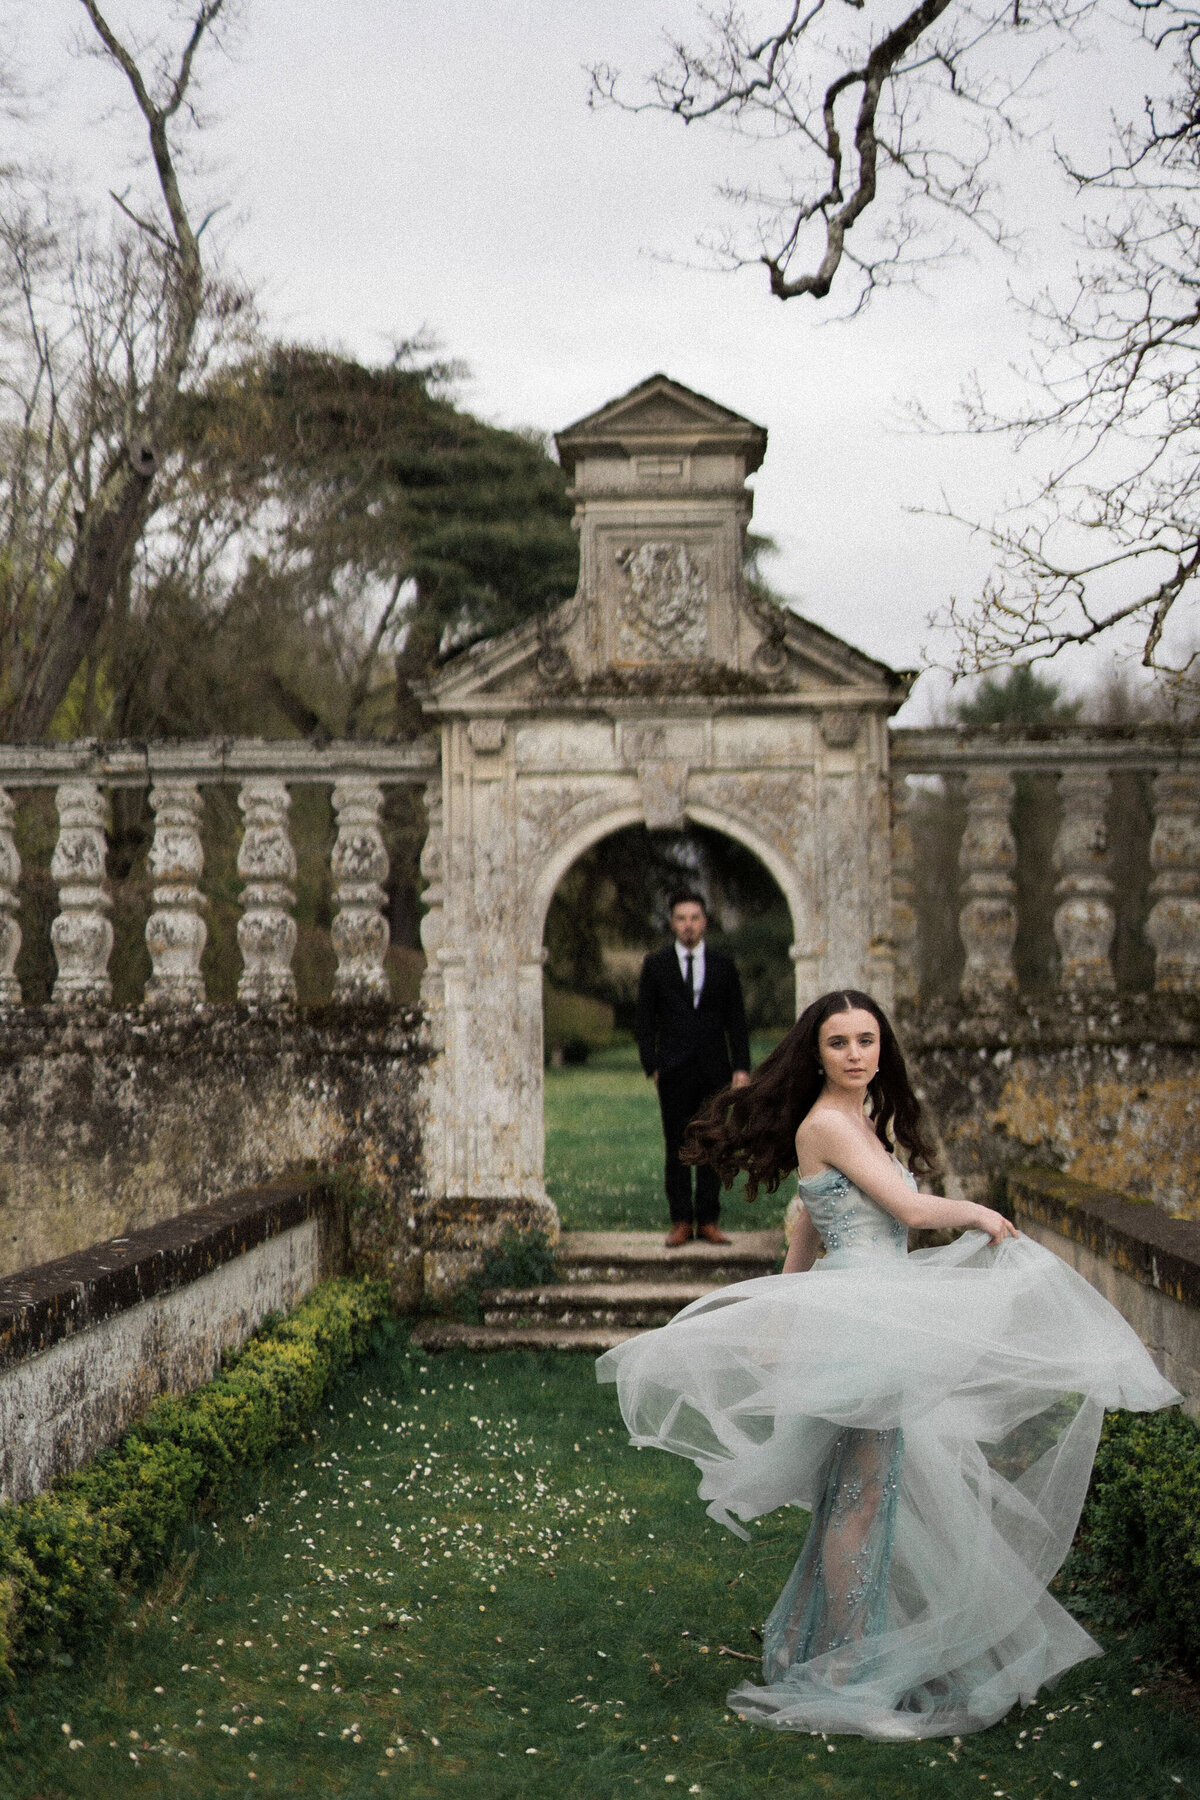 064-Chateau-de-la-Bourdaisiere-Destination-Wedding-Elopement-Photographer-Paris-Cinematic-Editorial-Luxury-Fine-Art-Lisa-Vigliotta-Photography